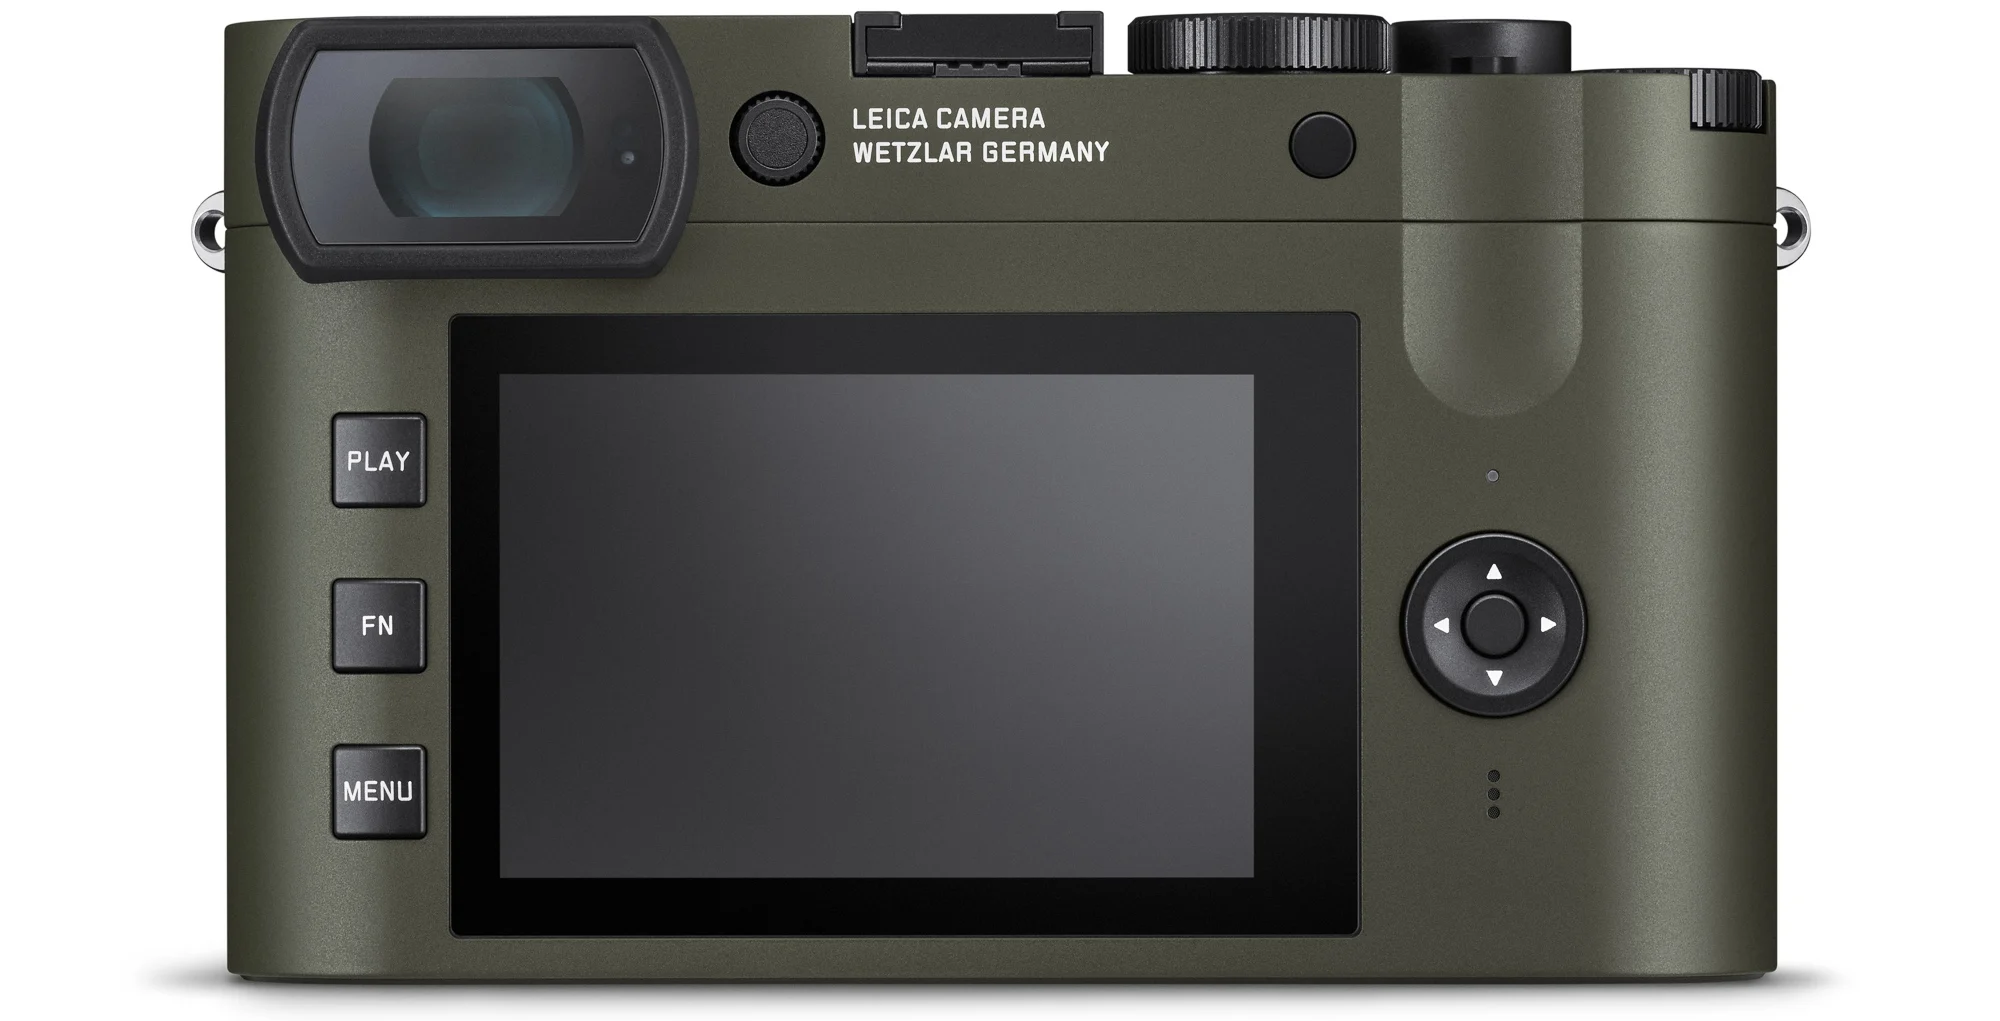 Leica ra mắt máy ảnh Q2 phiên bản đặc biệt Reporter với lớp vỏ Kevlar chống đạn